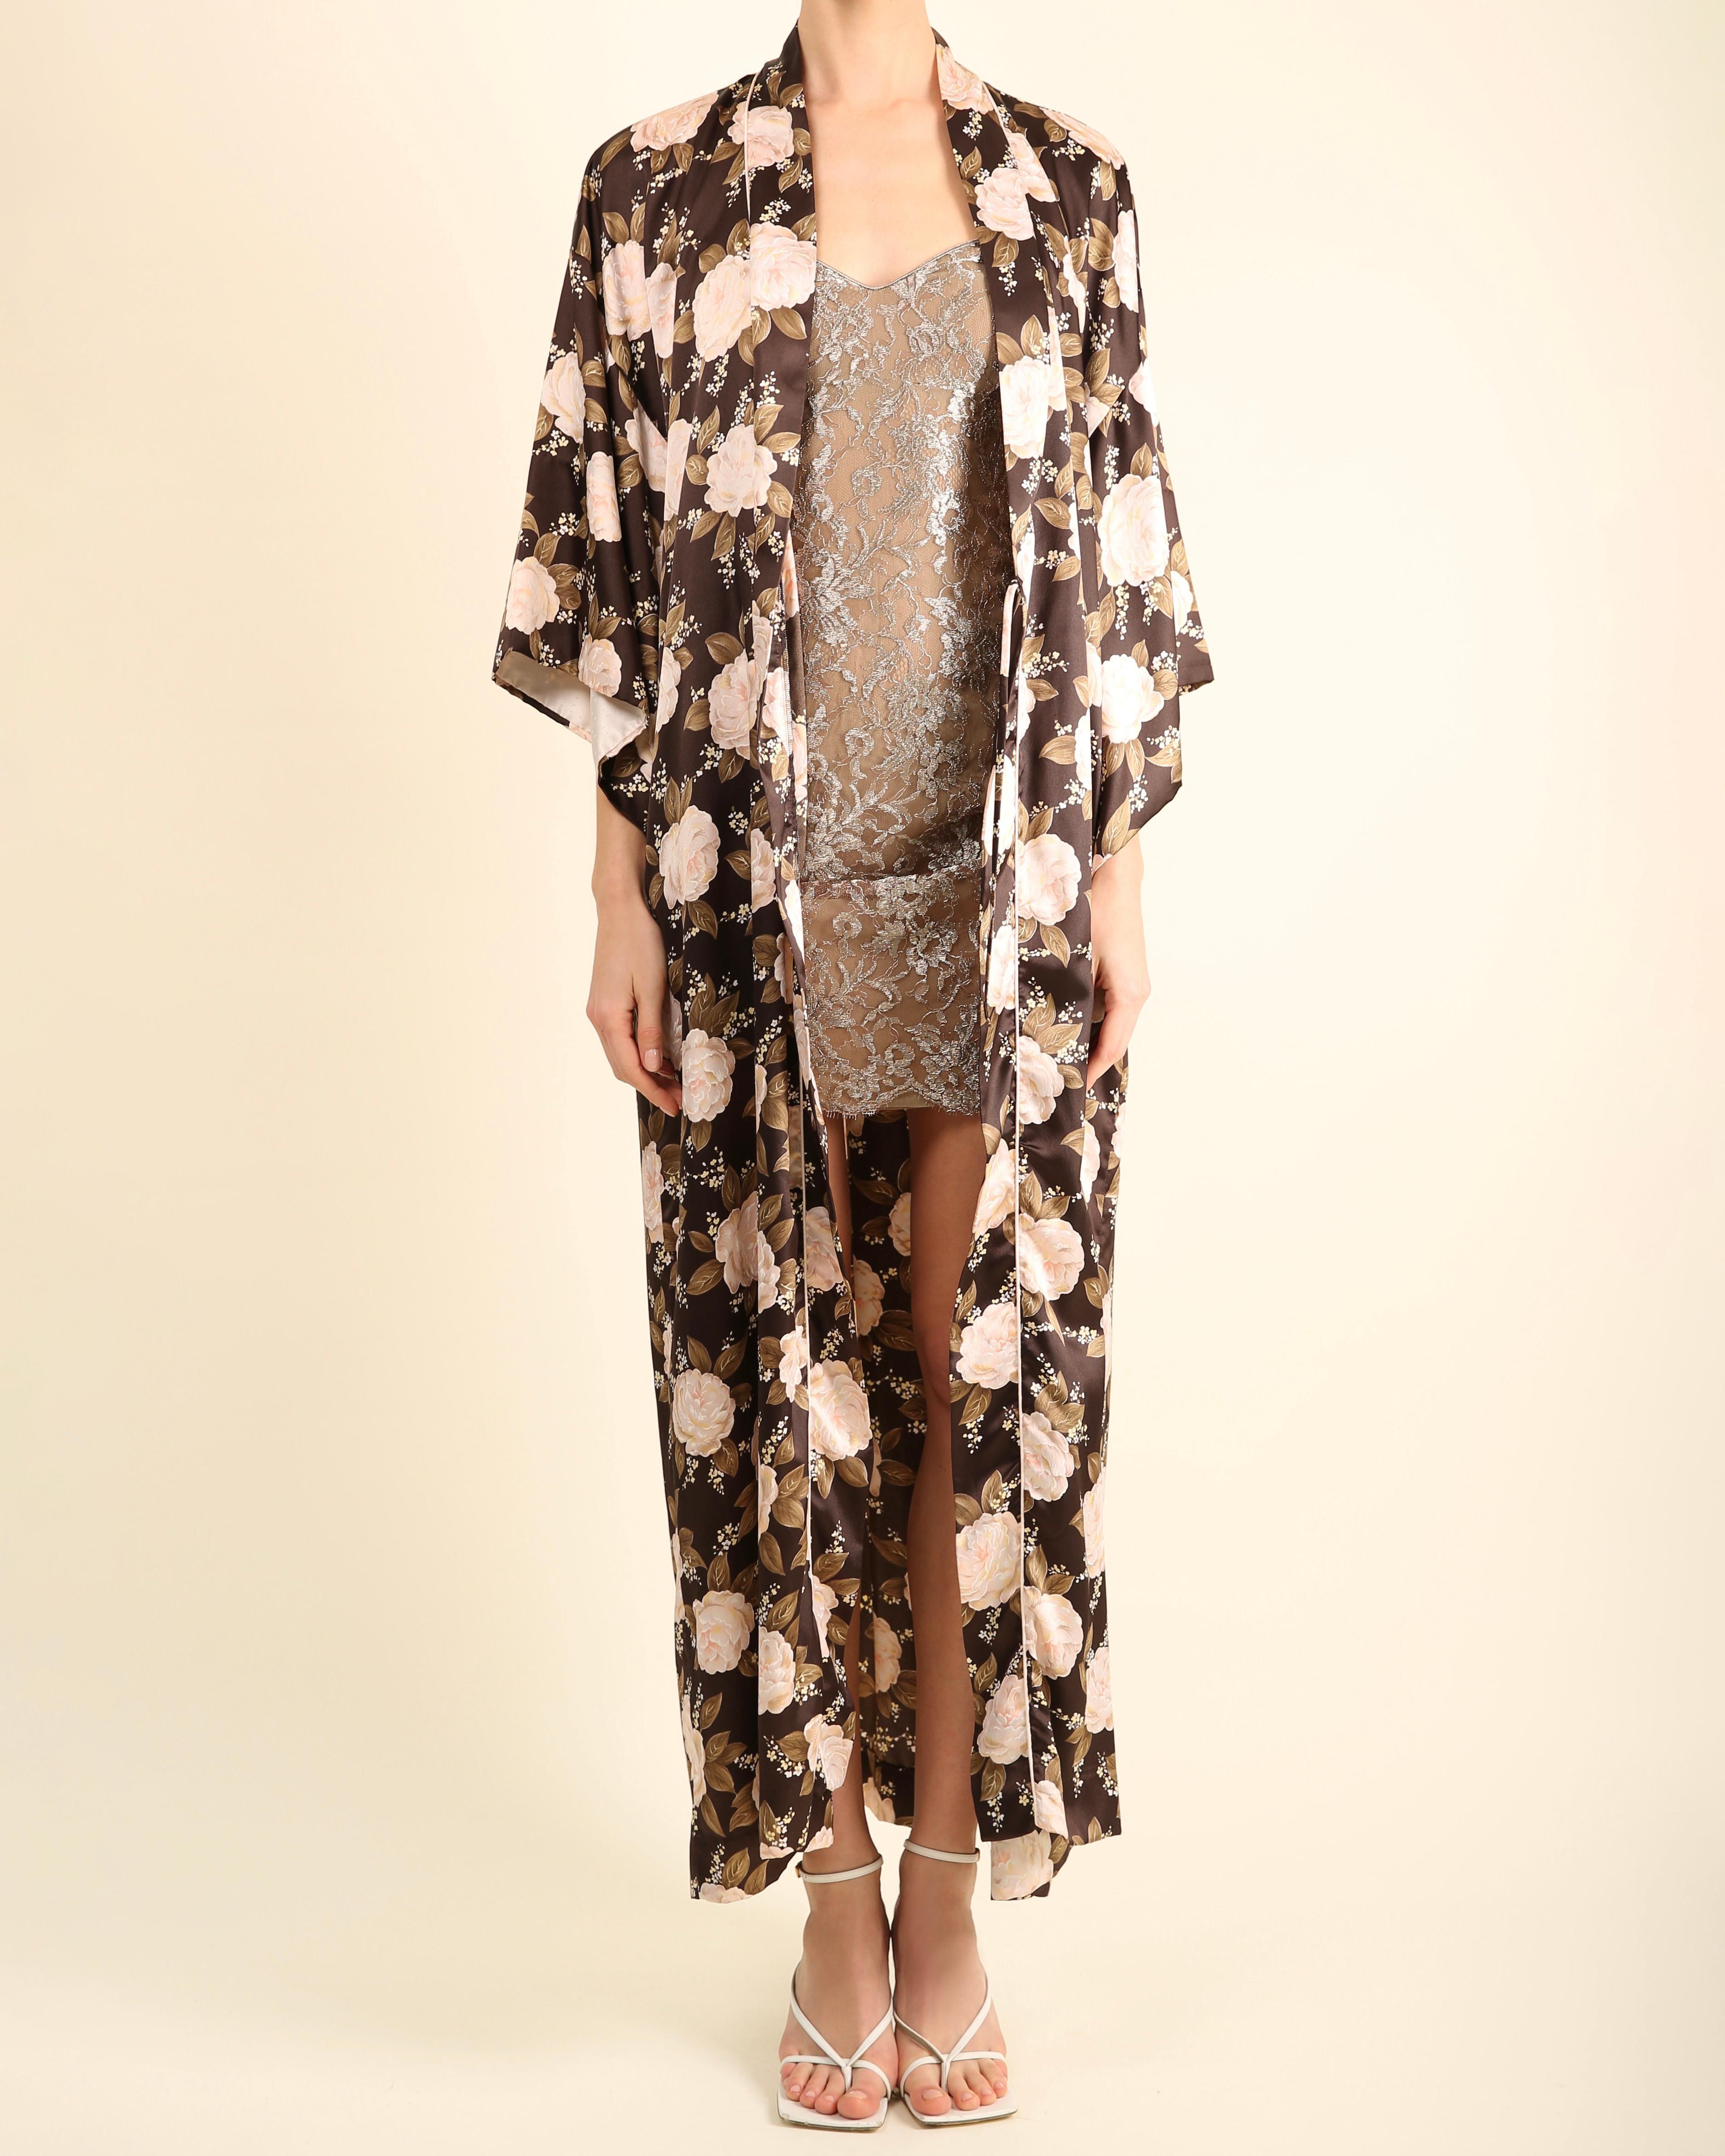 LOVE LALI Vintage By

Eine wunderschöne Kimono-Robe von Christian Dior, die man auch gut als Abendmantel über einem Kleid tragen kann.
Dunkelbraun mit rosa, gelbem und grünem Blumendruck.
Mit Kimonoärmeln, übergroßem Schnitt, zwei verdeckten Taschen